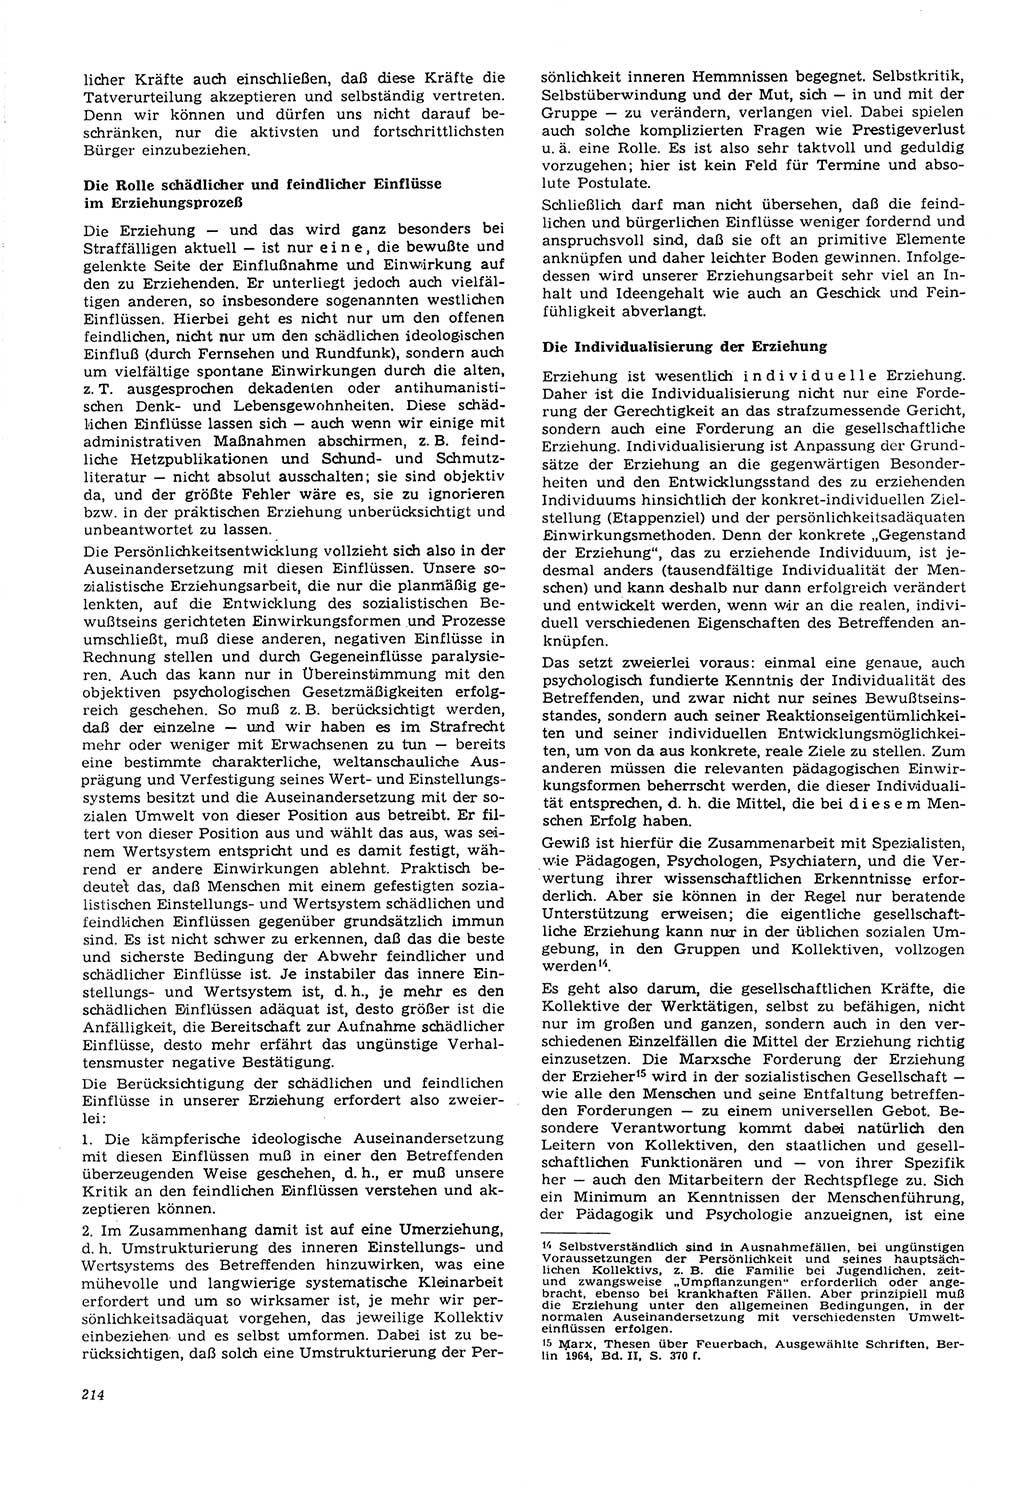 Neue Justiz (NJ), Zeitschrift für Recht und Rechtswissenschaft [Deutsche Demokratische Republik (DDR)], 21. Jahrgang 1967, Seite 214 (NJ DDR 1967, S. 214)